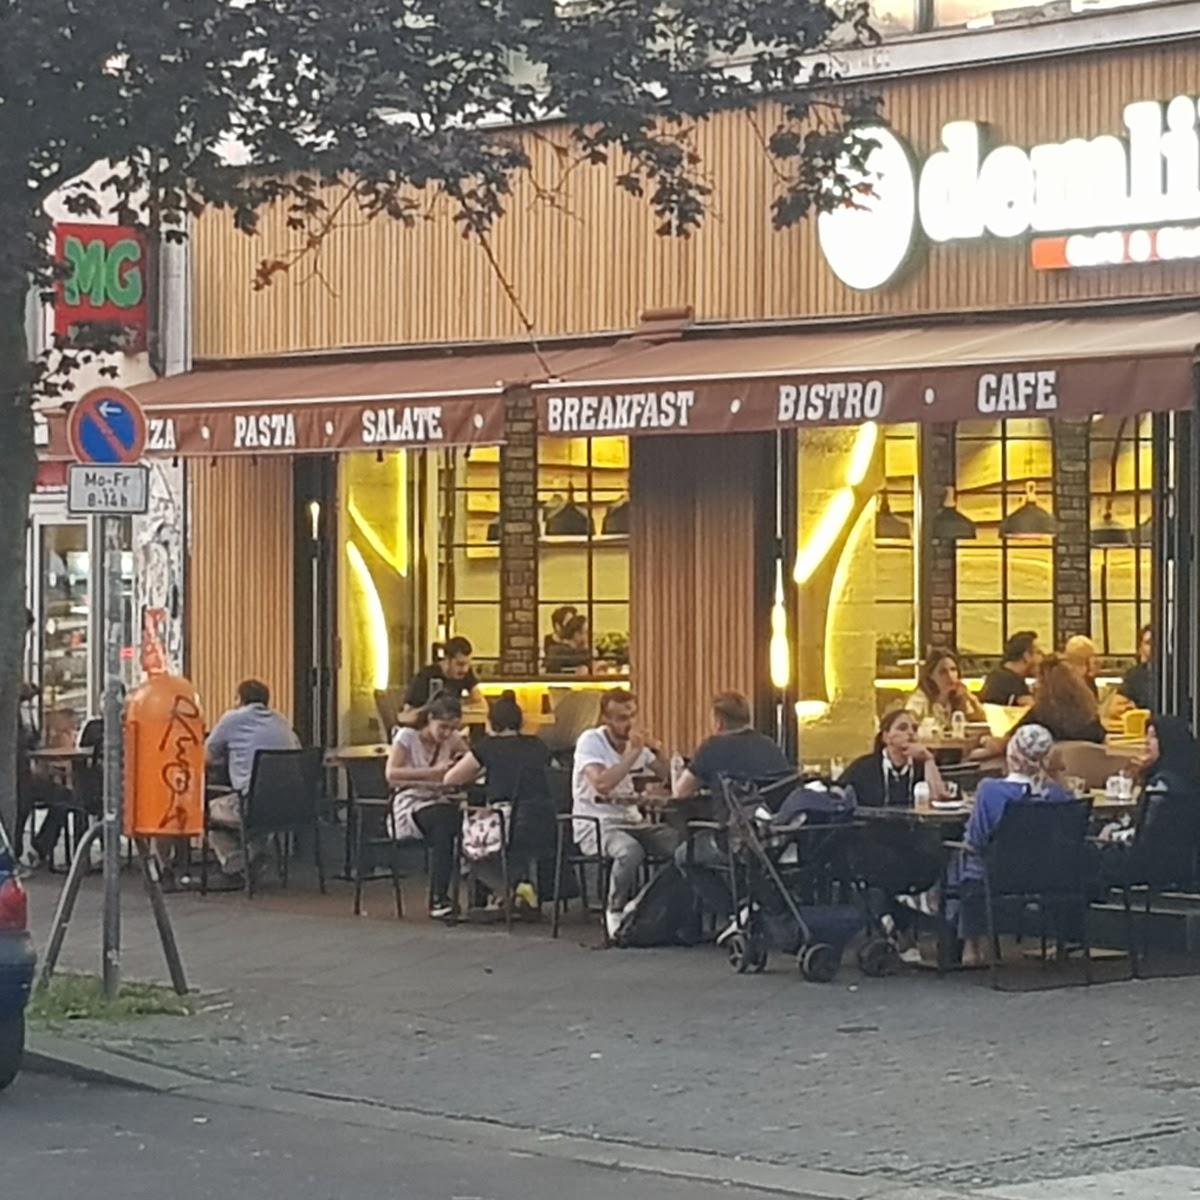 Restaurant "Demlik Cafe Bistro" in Berlin